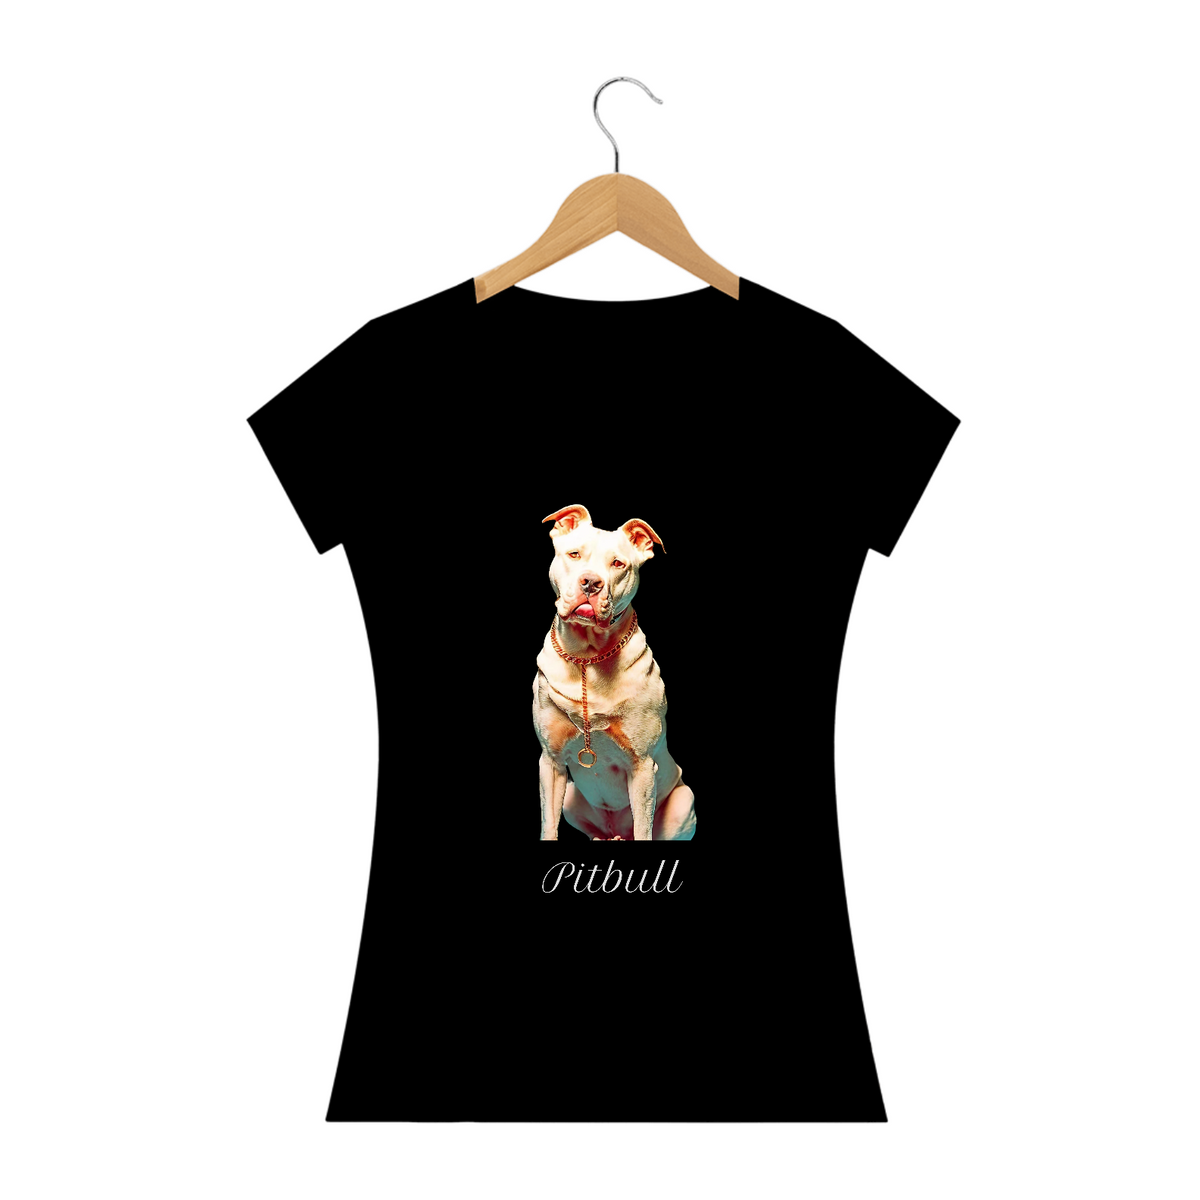 Nome do produto: Pitbull / T-shirt Woman Pitbull